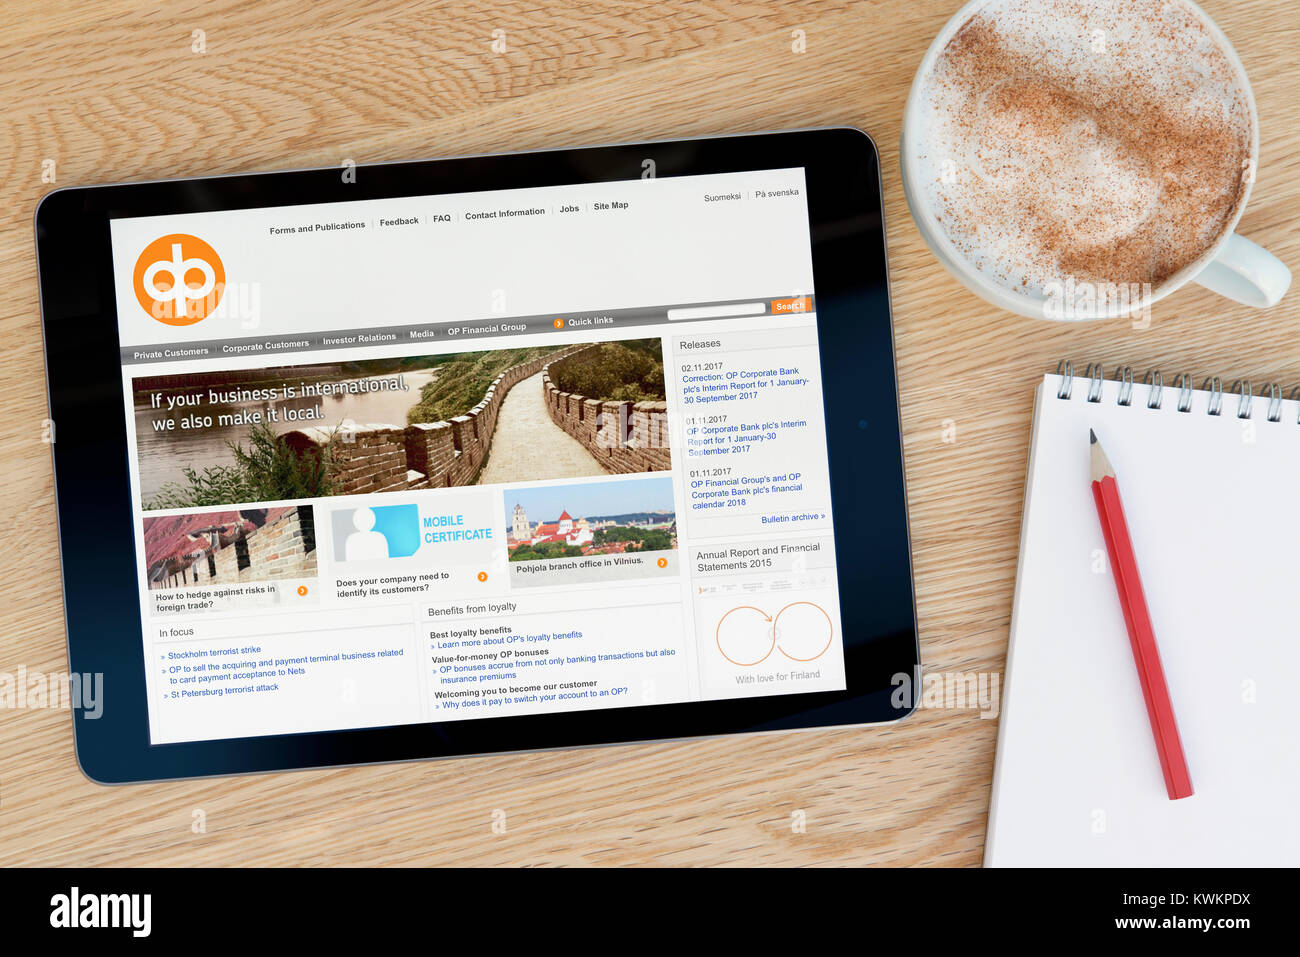 L'OP Financial Group sito web su un iPad dispositivo tablet, appoggiato su un tavolo di legno accanto a un blocco note, matita e tazza di caffè (editoriale solo) Foto Stock